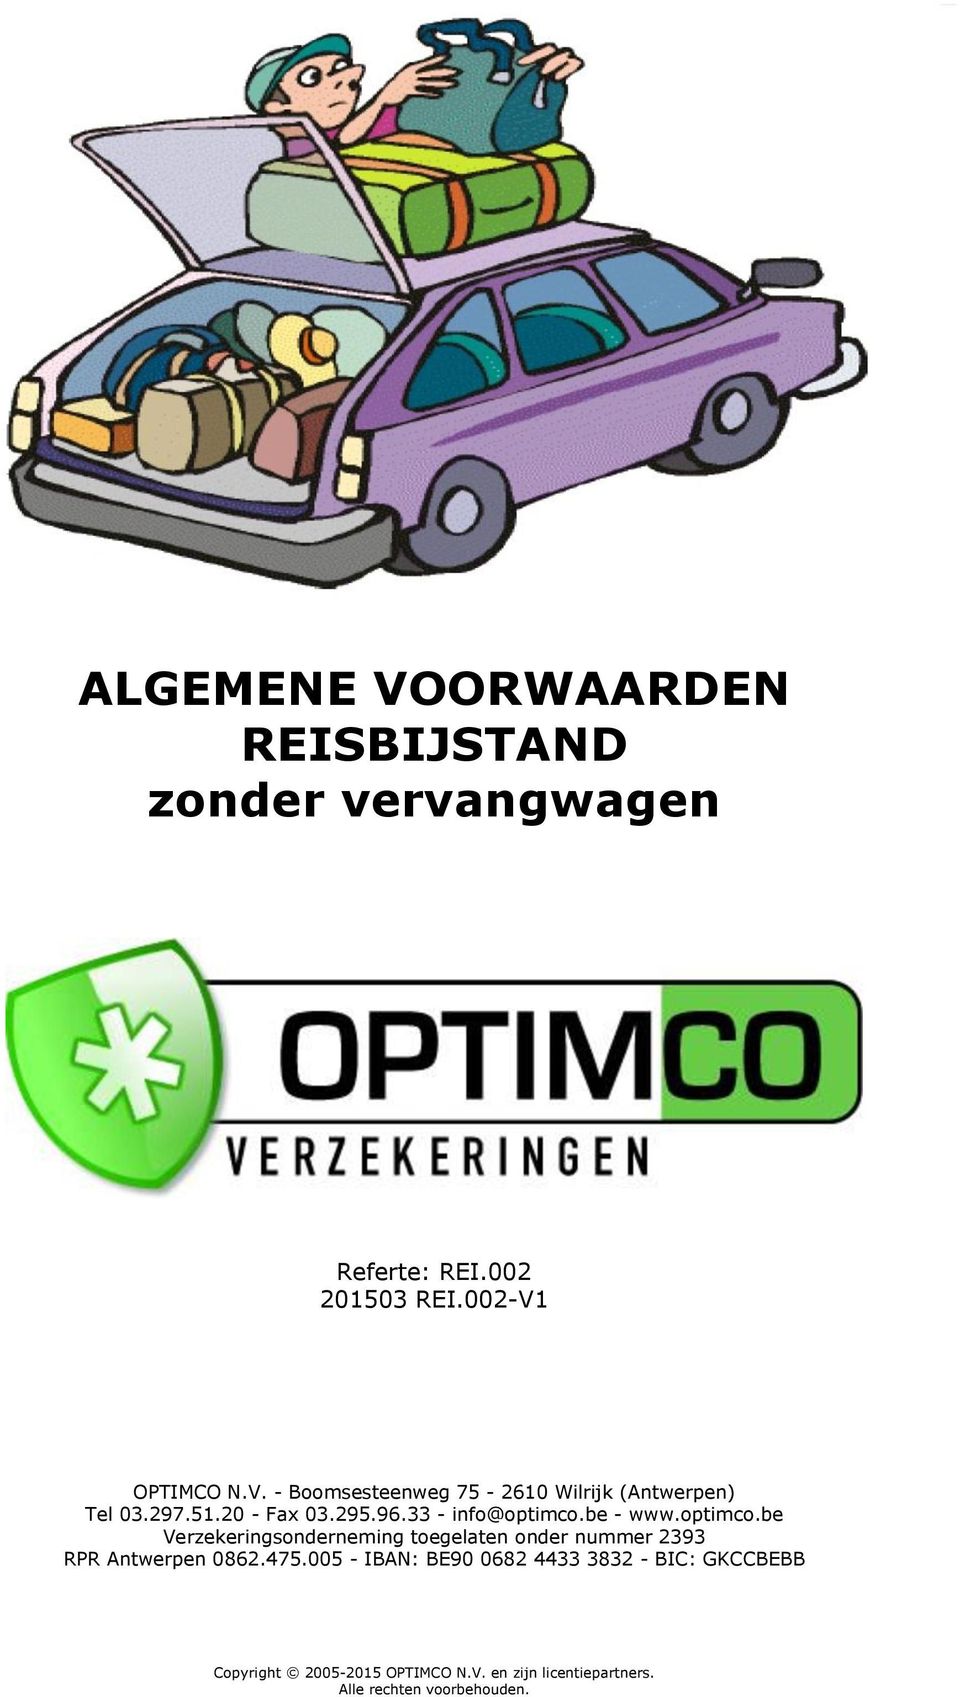 be - www.optimco.be Verzekeringsonderneming toegelaten onder nummer 2393 RPR Antwerpen 0862.475.